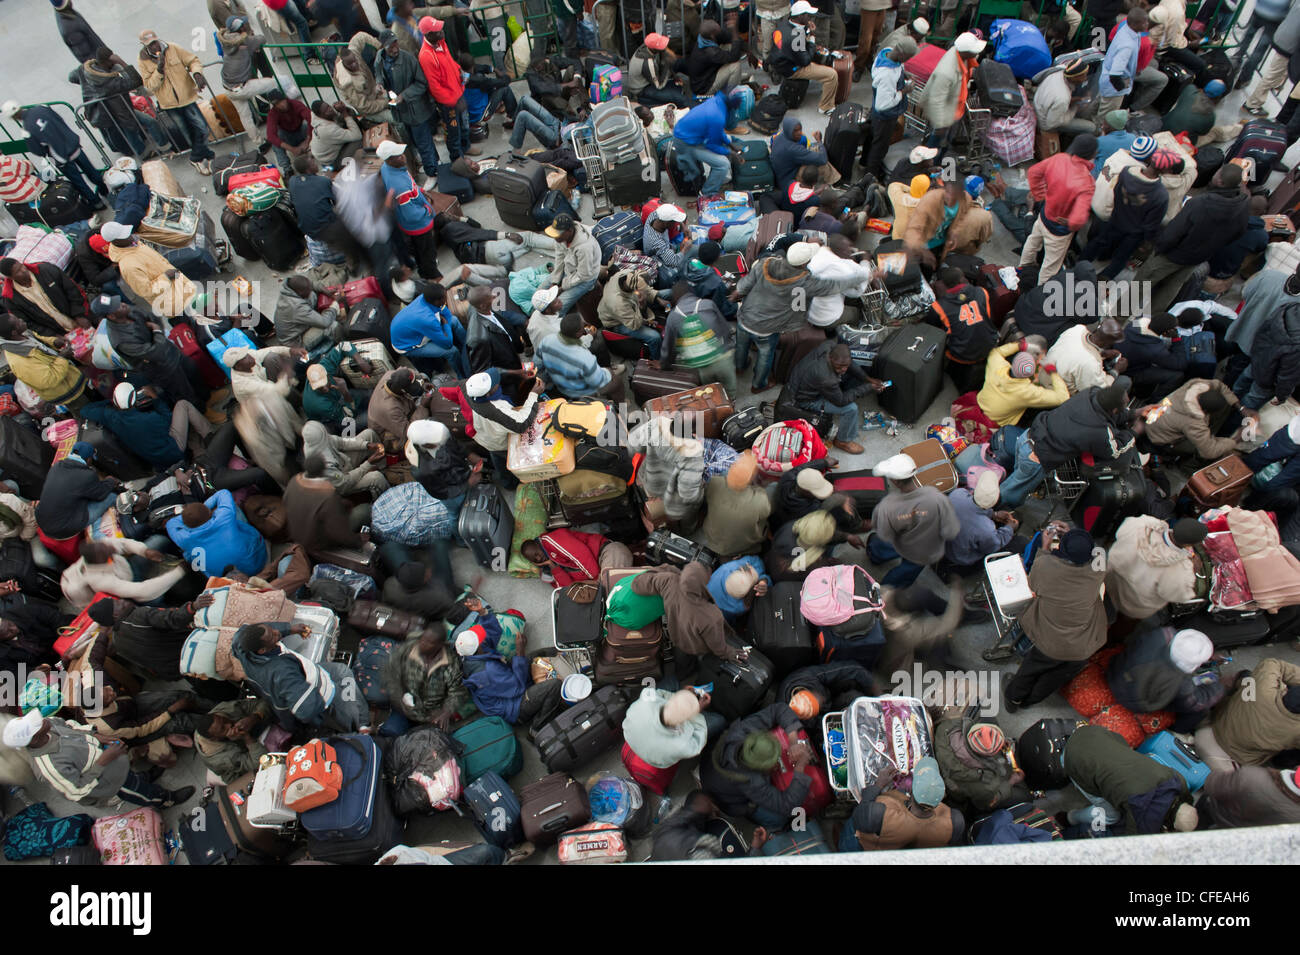 Aeroporto di Djerba. La Tunisia. Circa 15.000 profughi evacuati dalla Libia in attesa di aerei per portarle a casa. 2011 Foto Stock